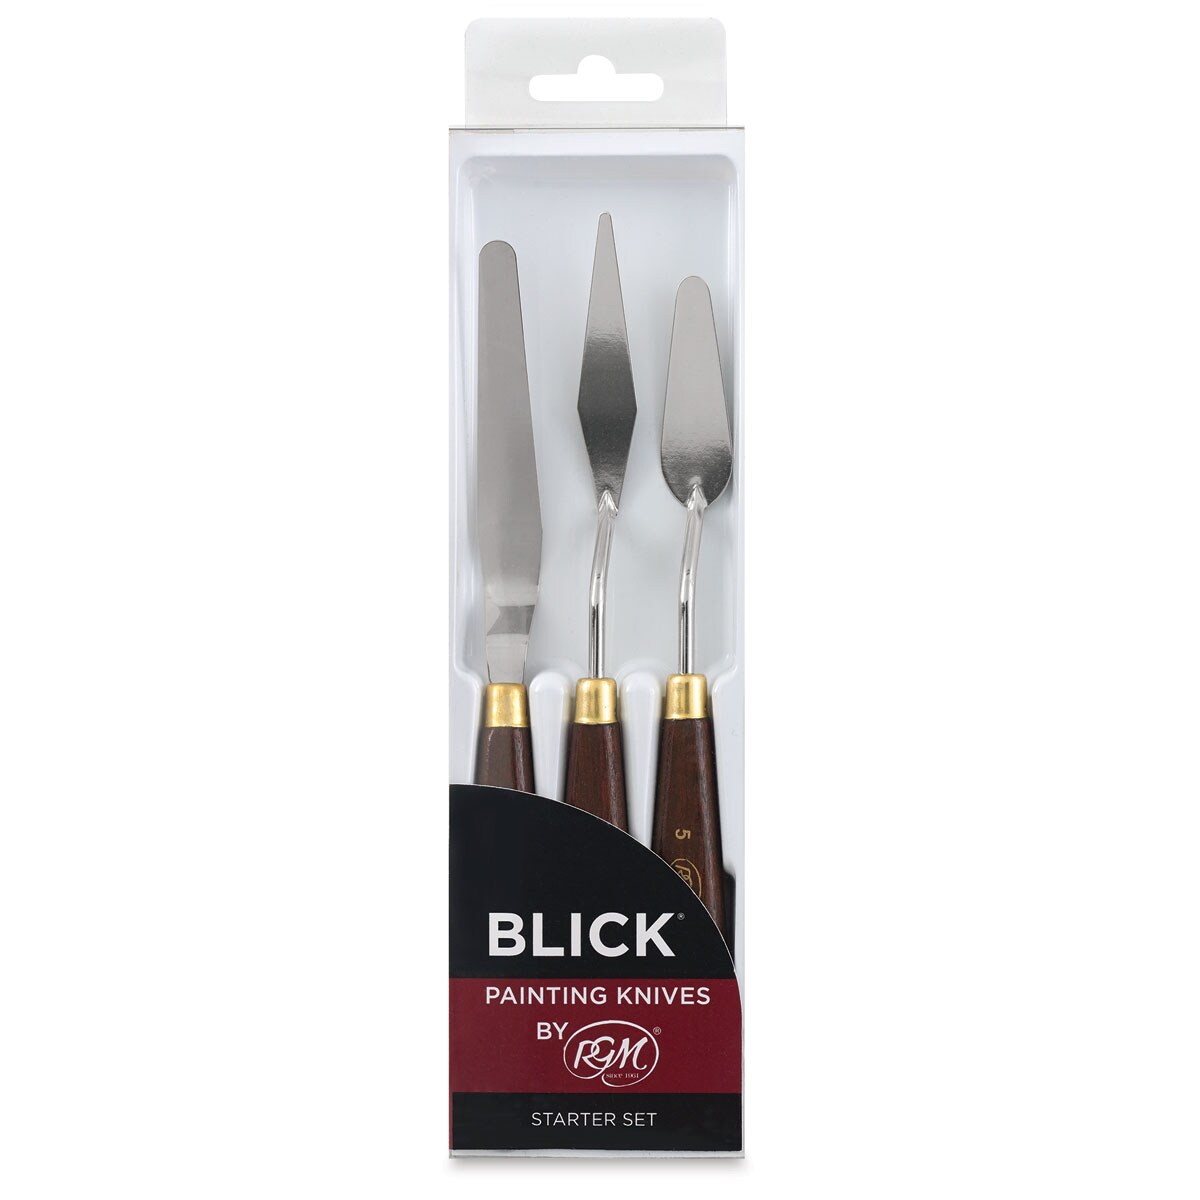 Blick Painting Knives - Starter, Set of 3 Knives